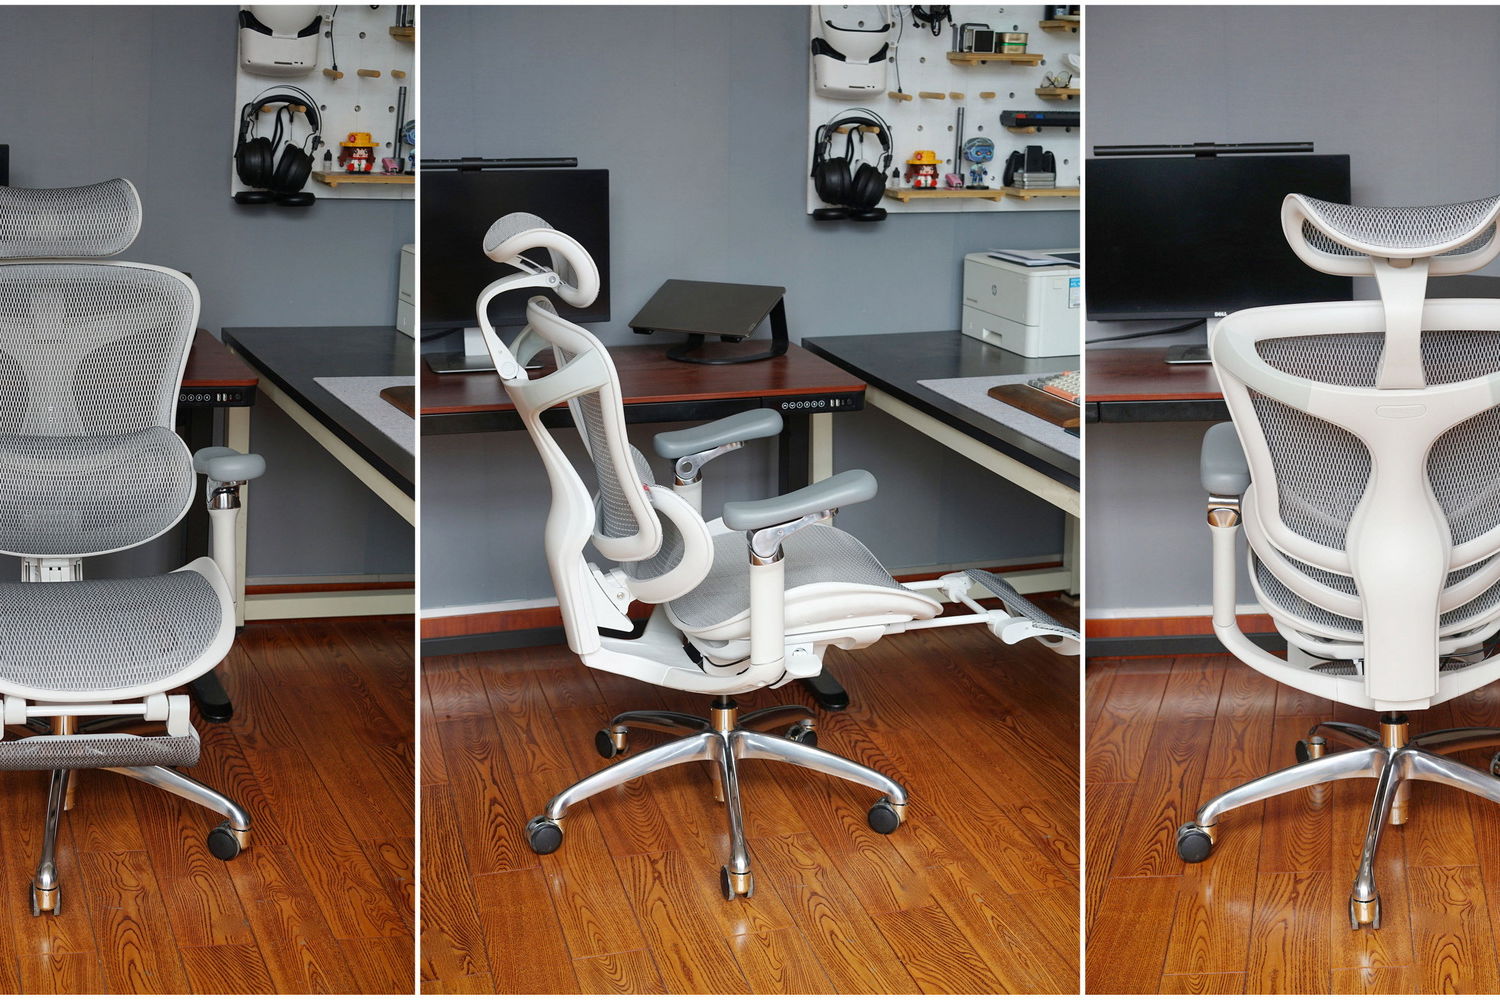 西昊Doro C300人体工学椅初体验